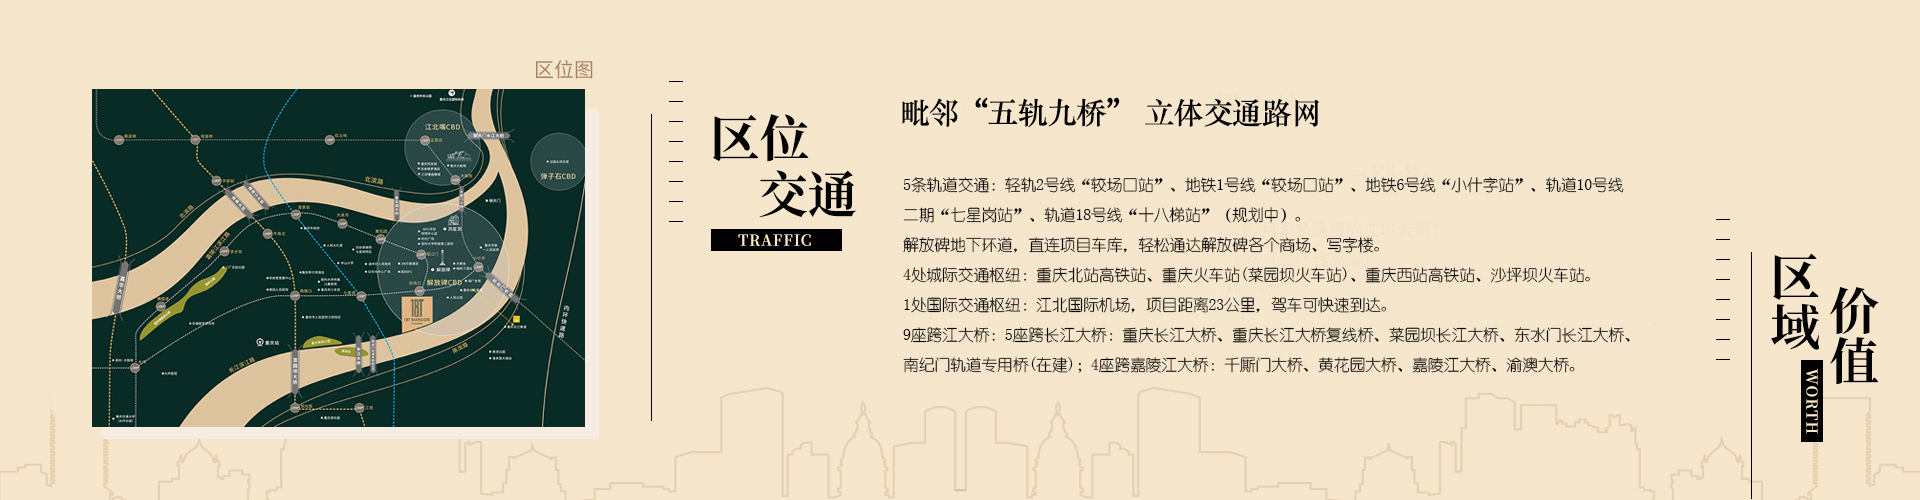 【测评报告】国浩·18T成为重庆渝中区核心地块新地标